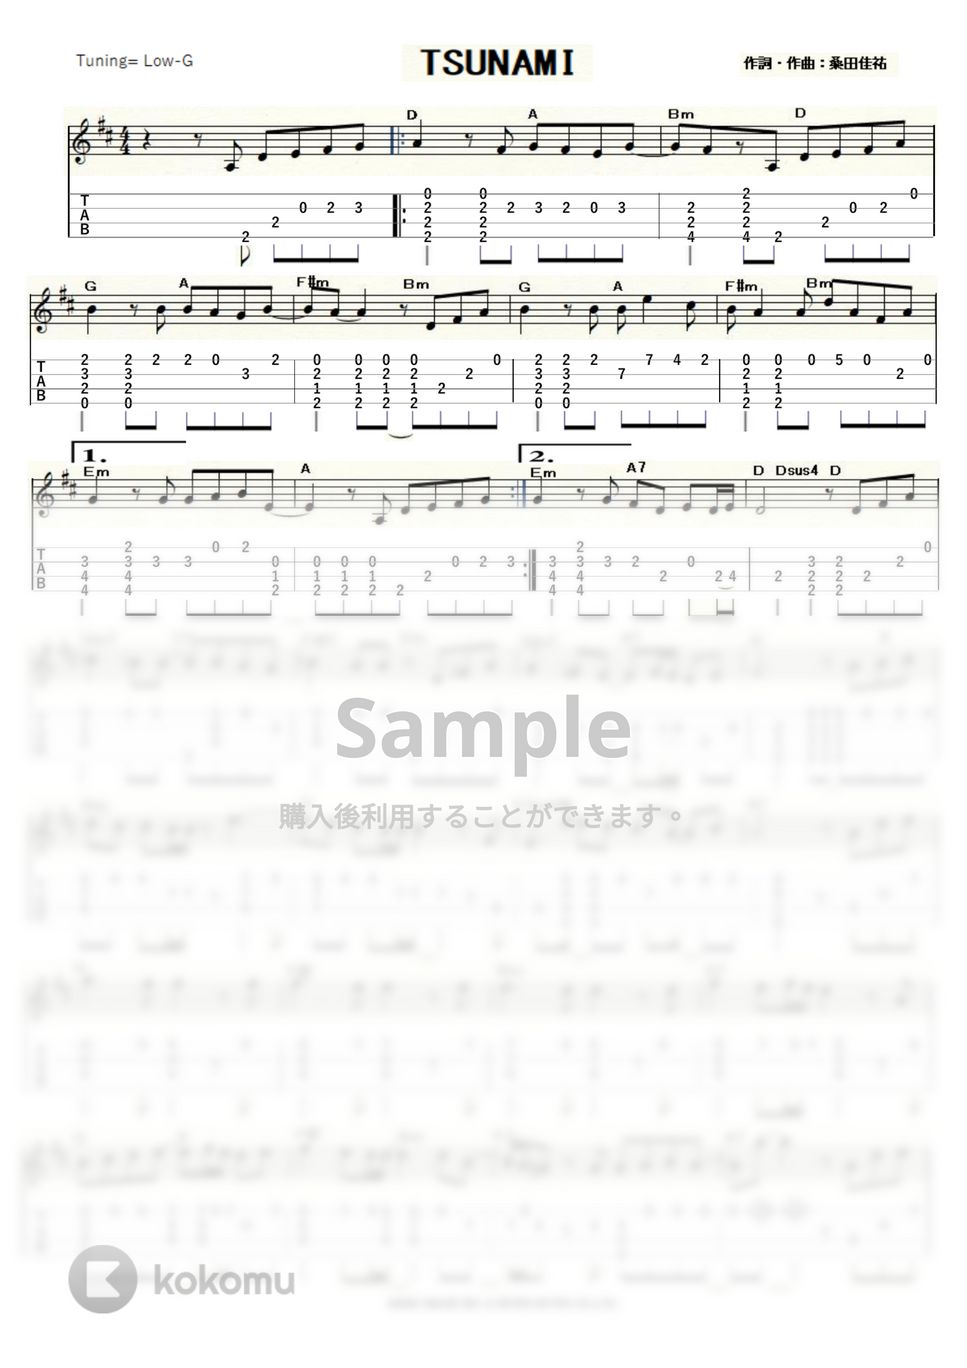 サザンオールスターズ - TSUNAMI (ｳｸﾚﾚｿﾛ / Low-G / 中級) by ukulelepapa